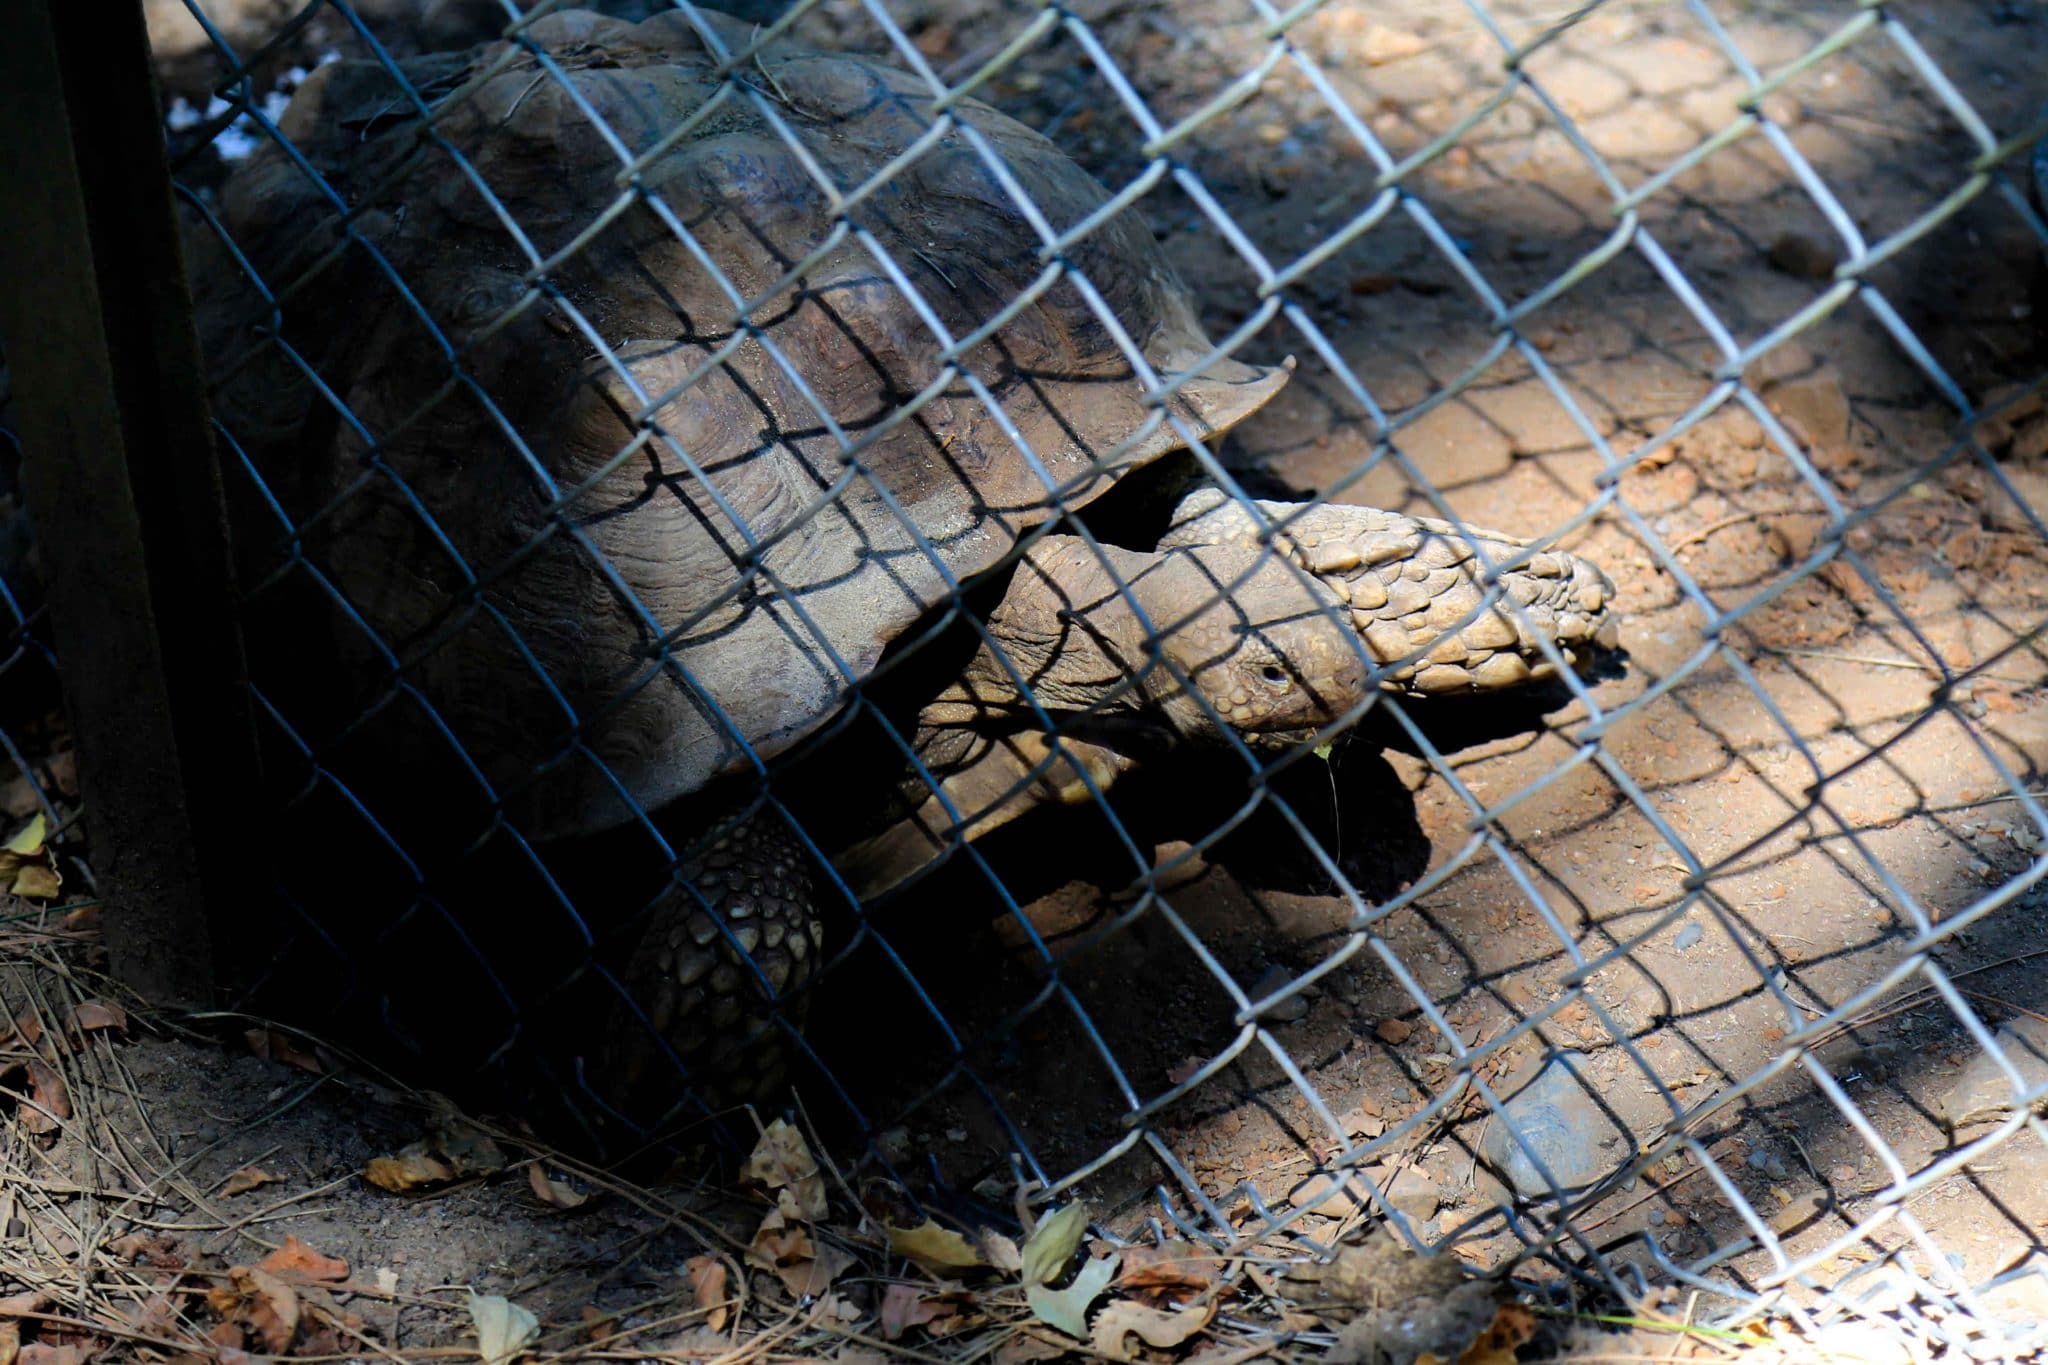 tortoise in enclosure at Wildlife Images